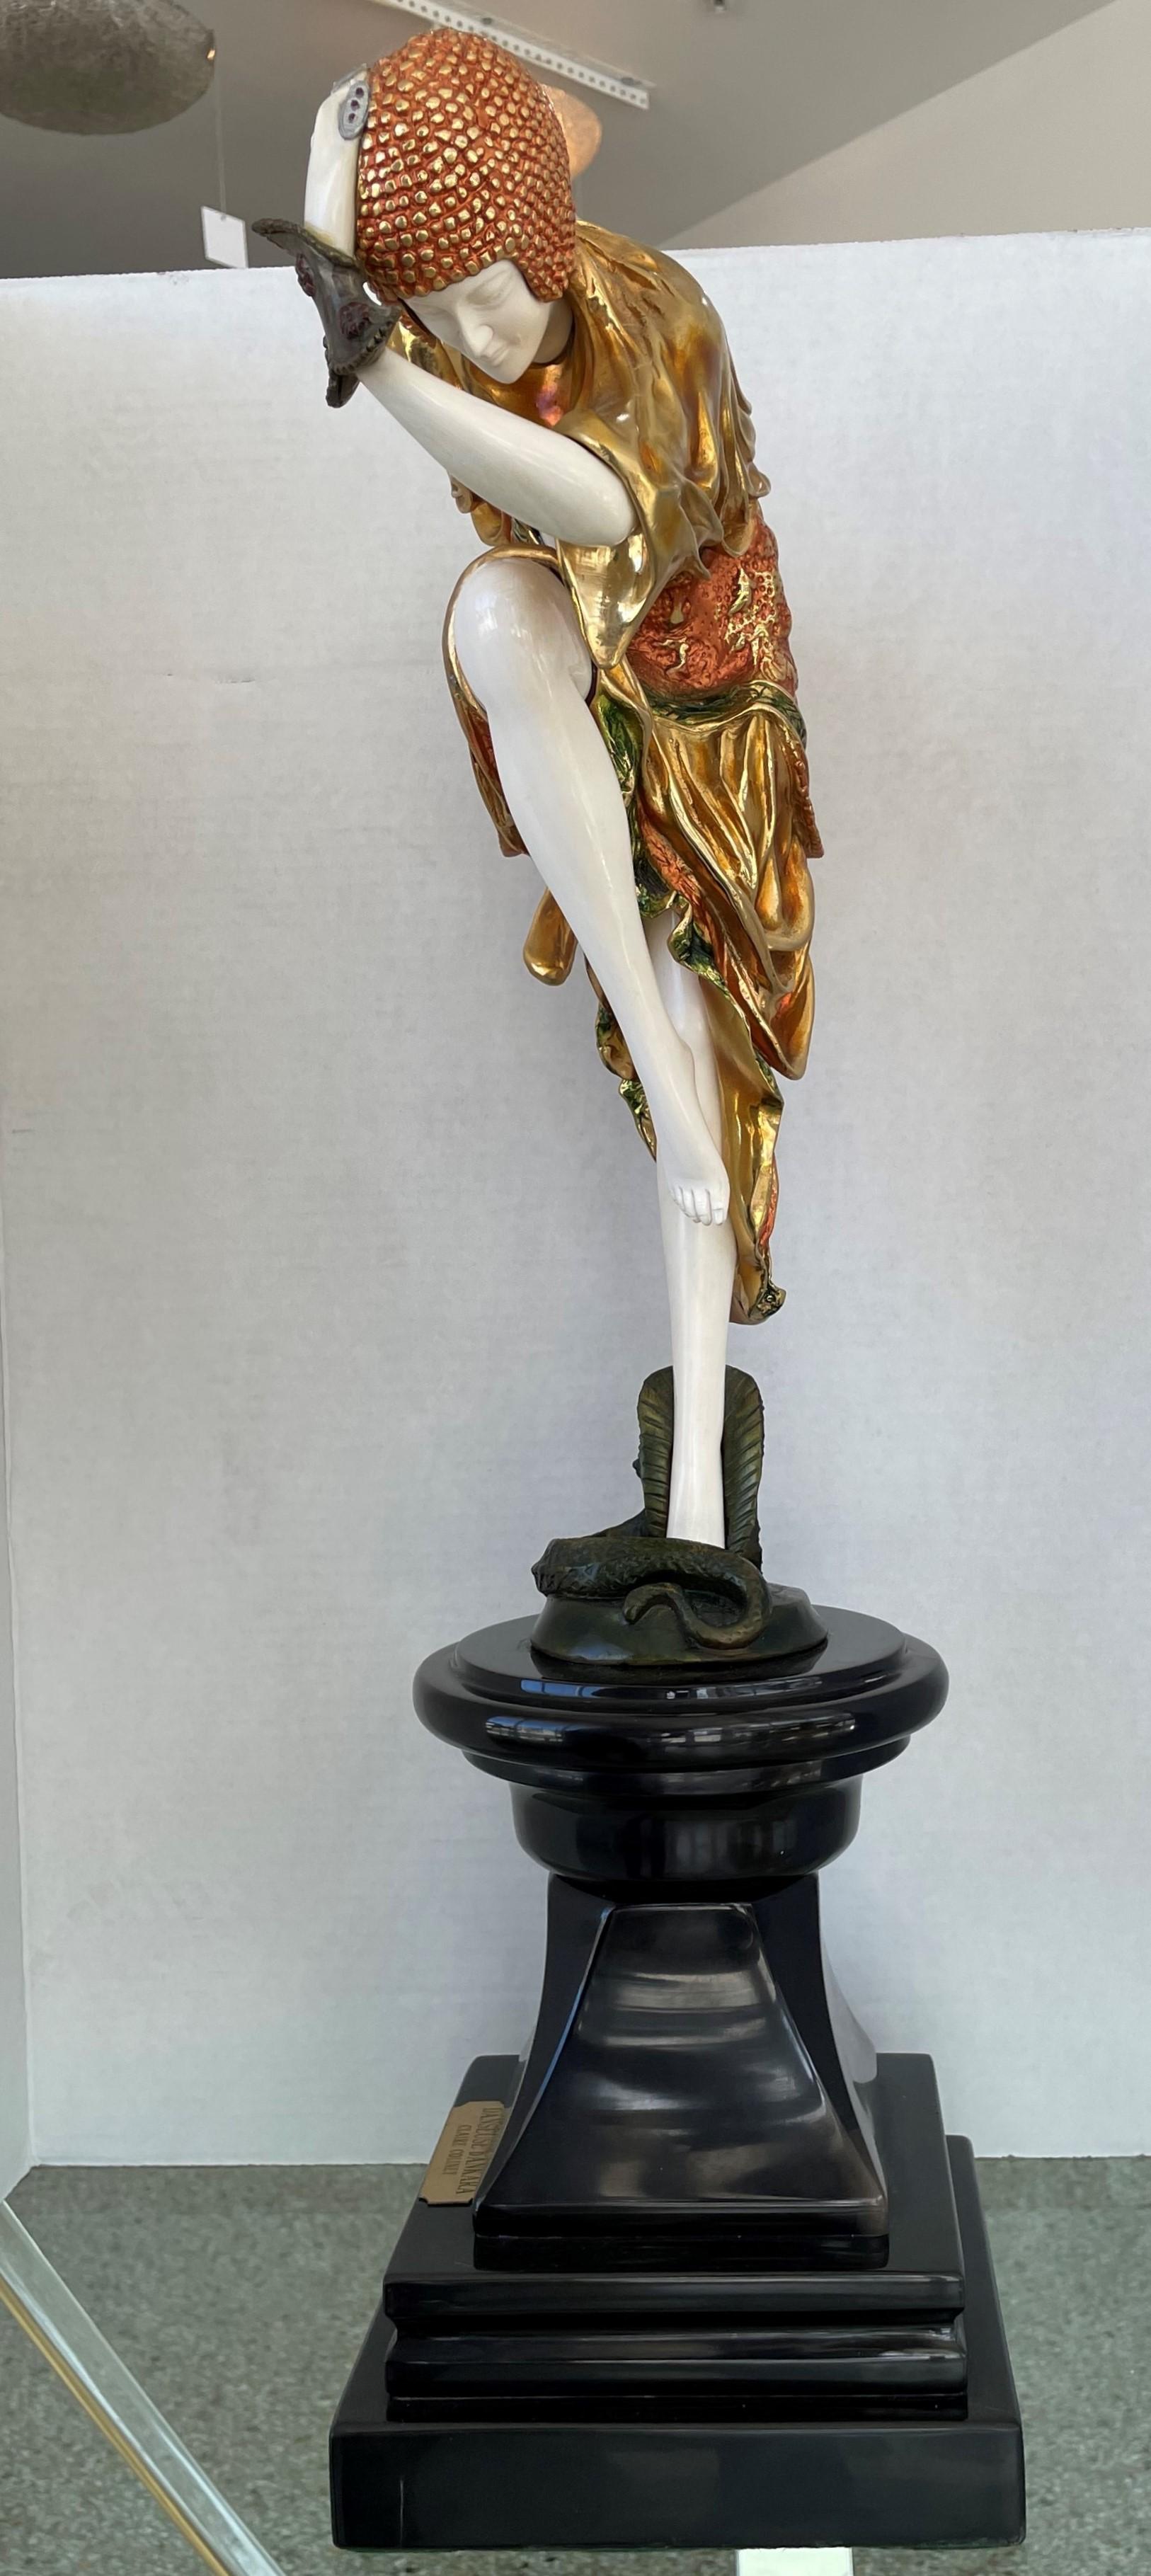 Diese stilvolle und schicke Skulptur im Art-déco-Stil ist der Schlangentänzerin des in Rumänien geborenen Bildhauers Demtre Chiparus nachempfunden, die im Original 1925 geschaffen wurde.

Das Stück ist in einer polychromen, patinierten Färbung